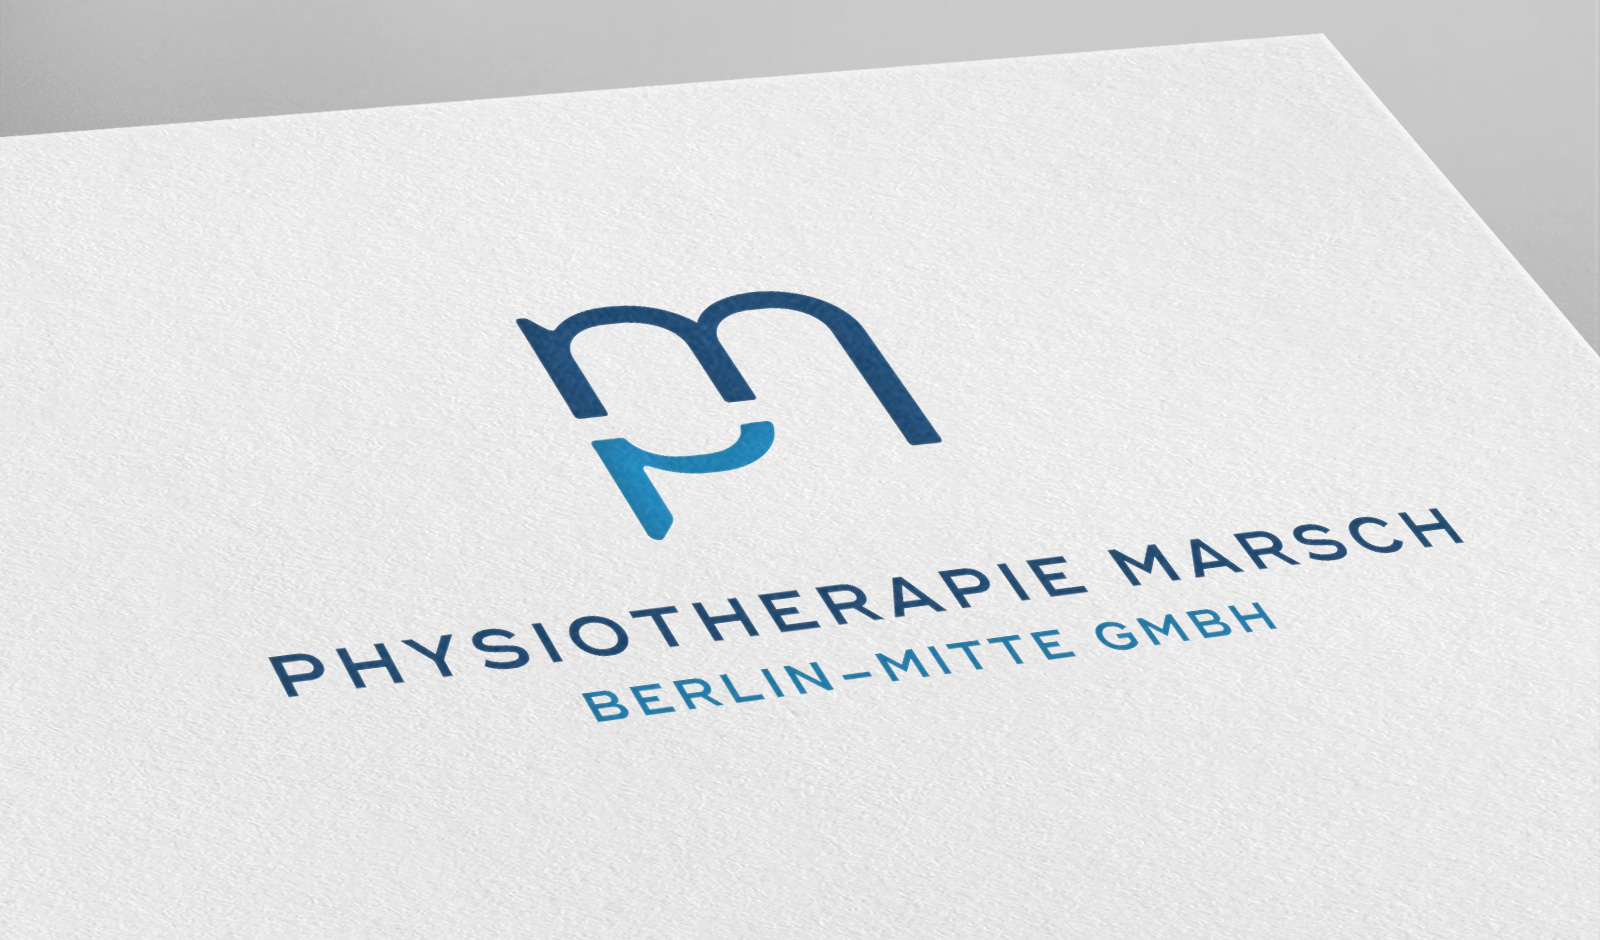 Physiotherapie Dr. Christian Marsch Berlin-Mitte, Logodesign